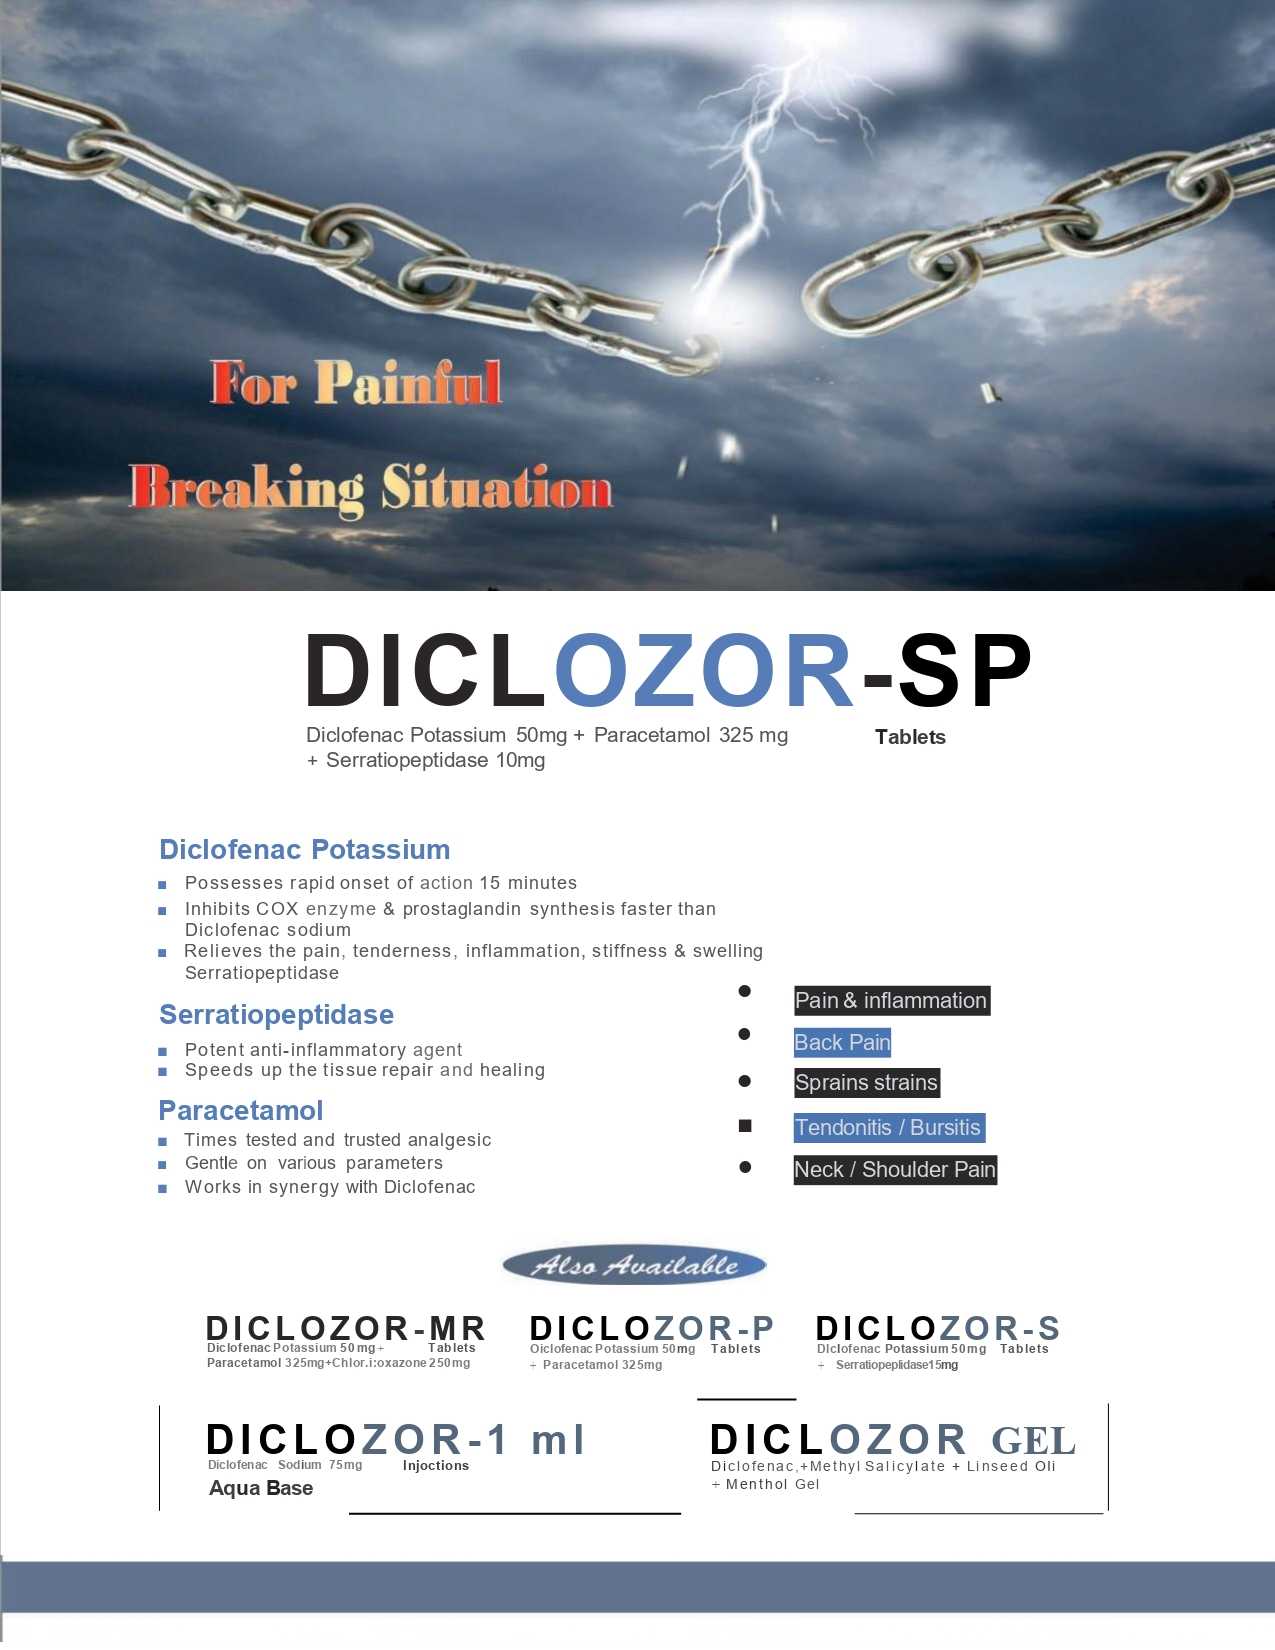 Diclozor-Gel